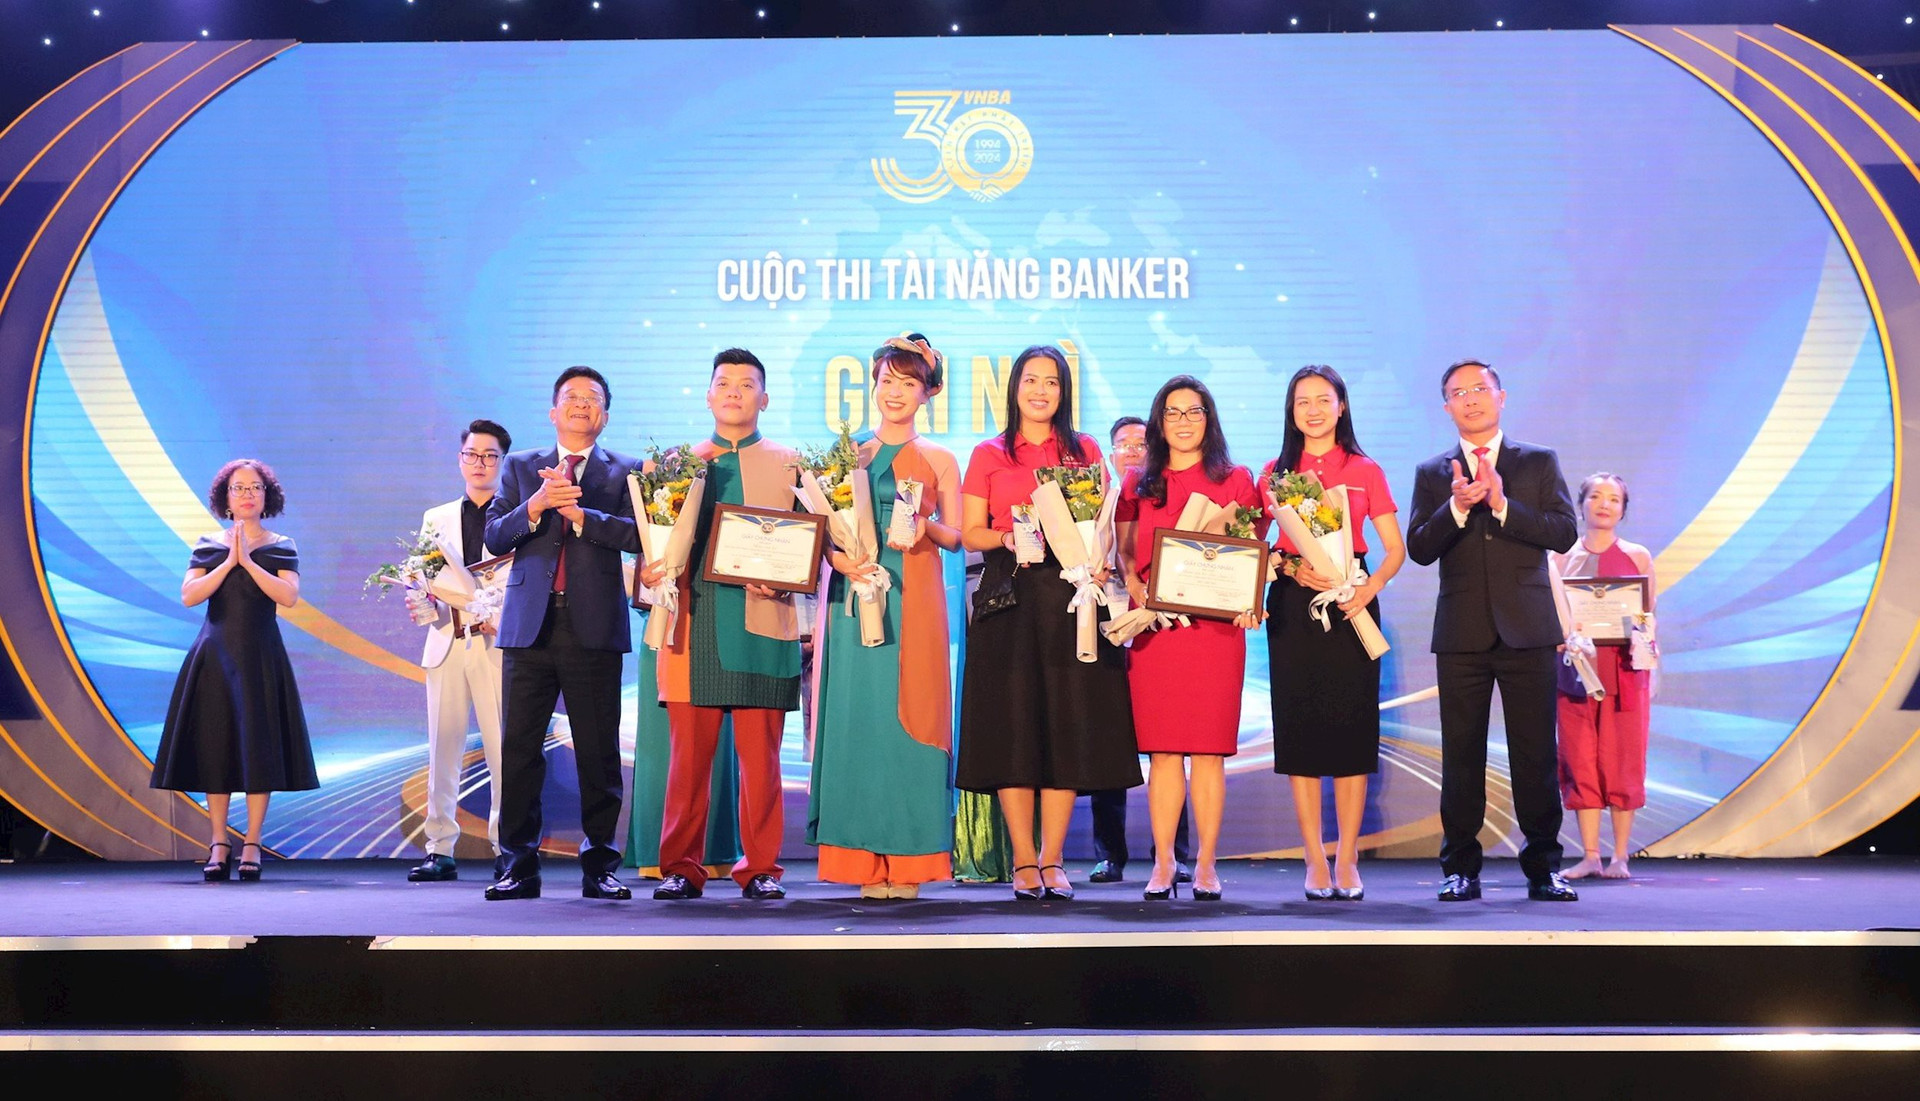 Ông Phạm Đức Ấn - Chủ tịch HHNH và ông Nguyễn Quốc Hùng, Trưởng BTC trao giải cho các thí sinh đạt giải Nhì Cuộc thi Tài năng Banker.